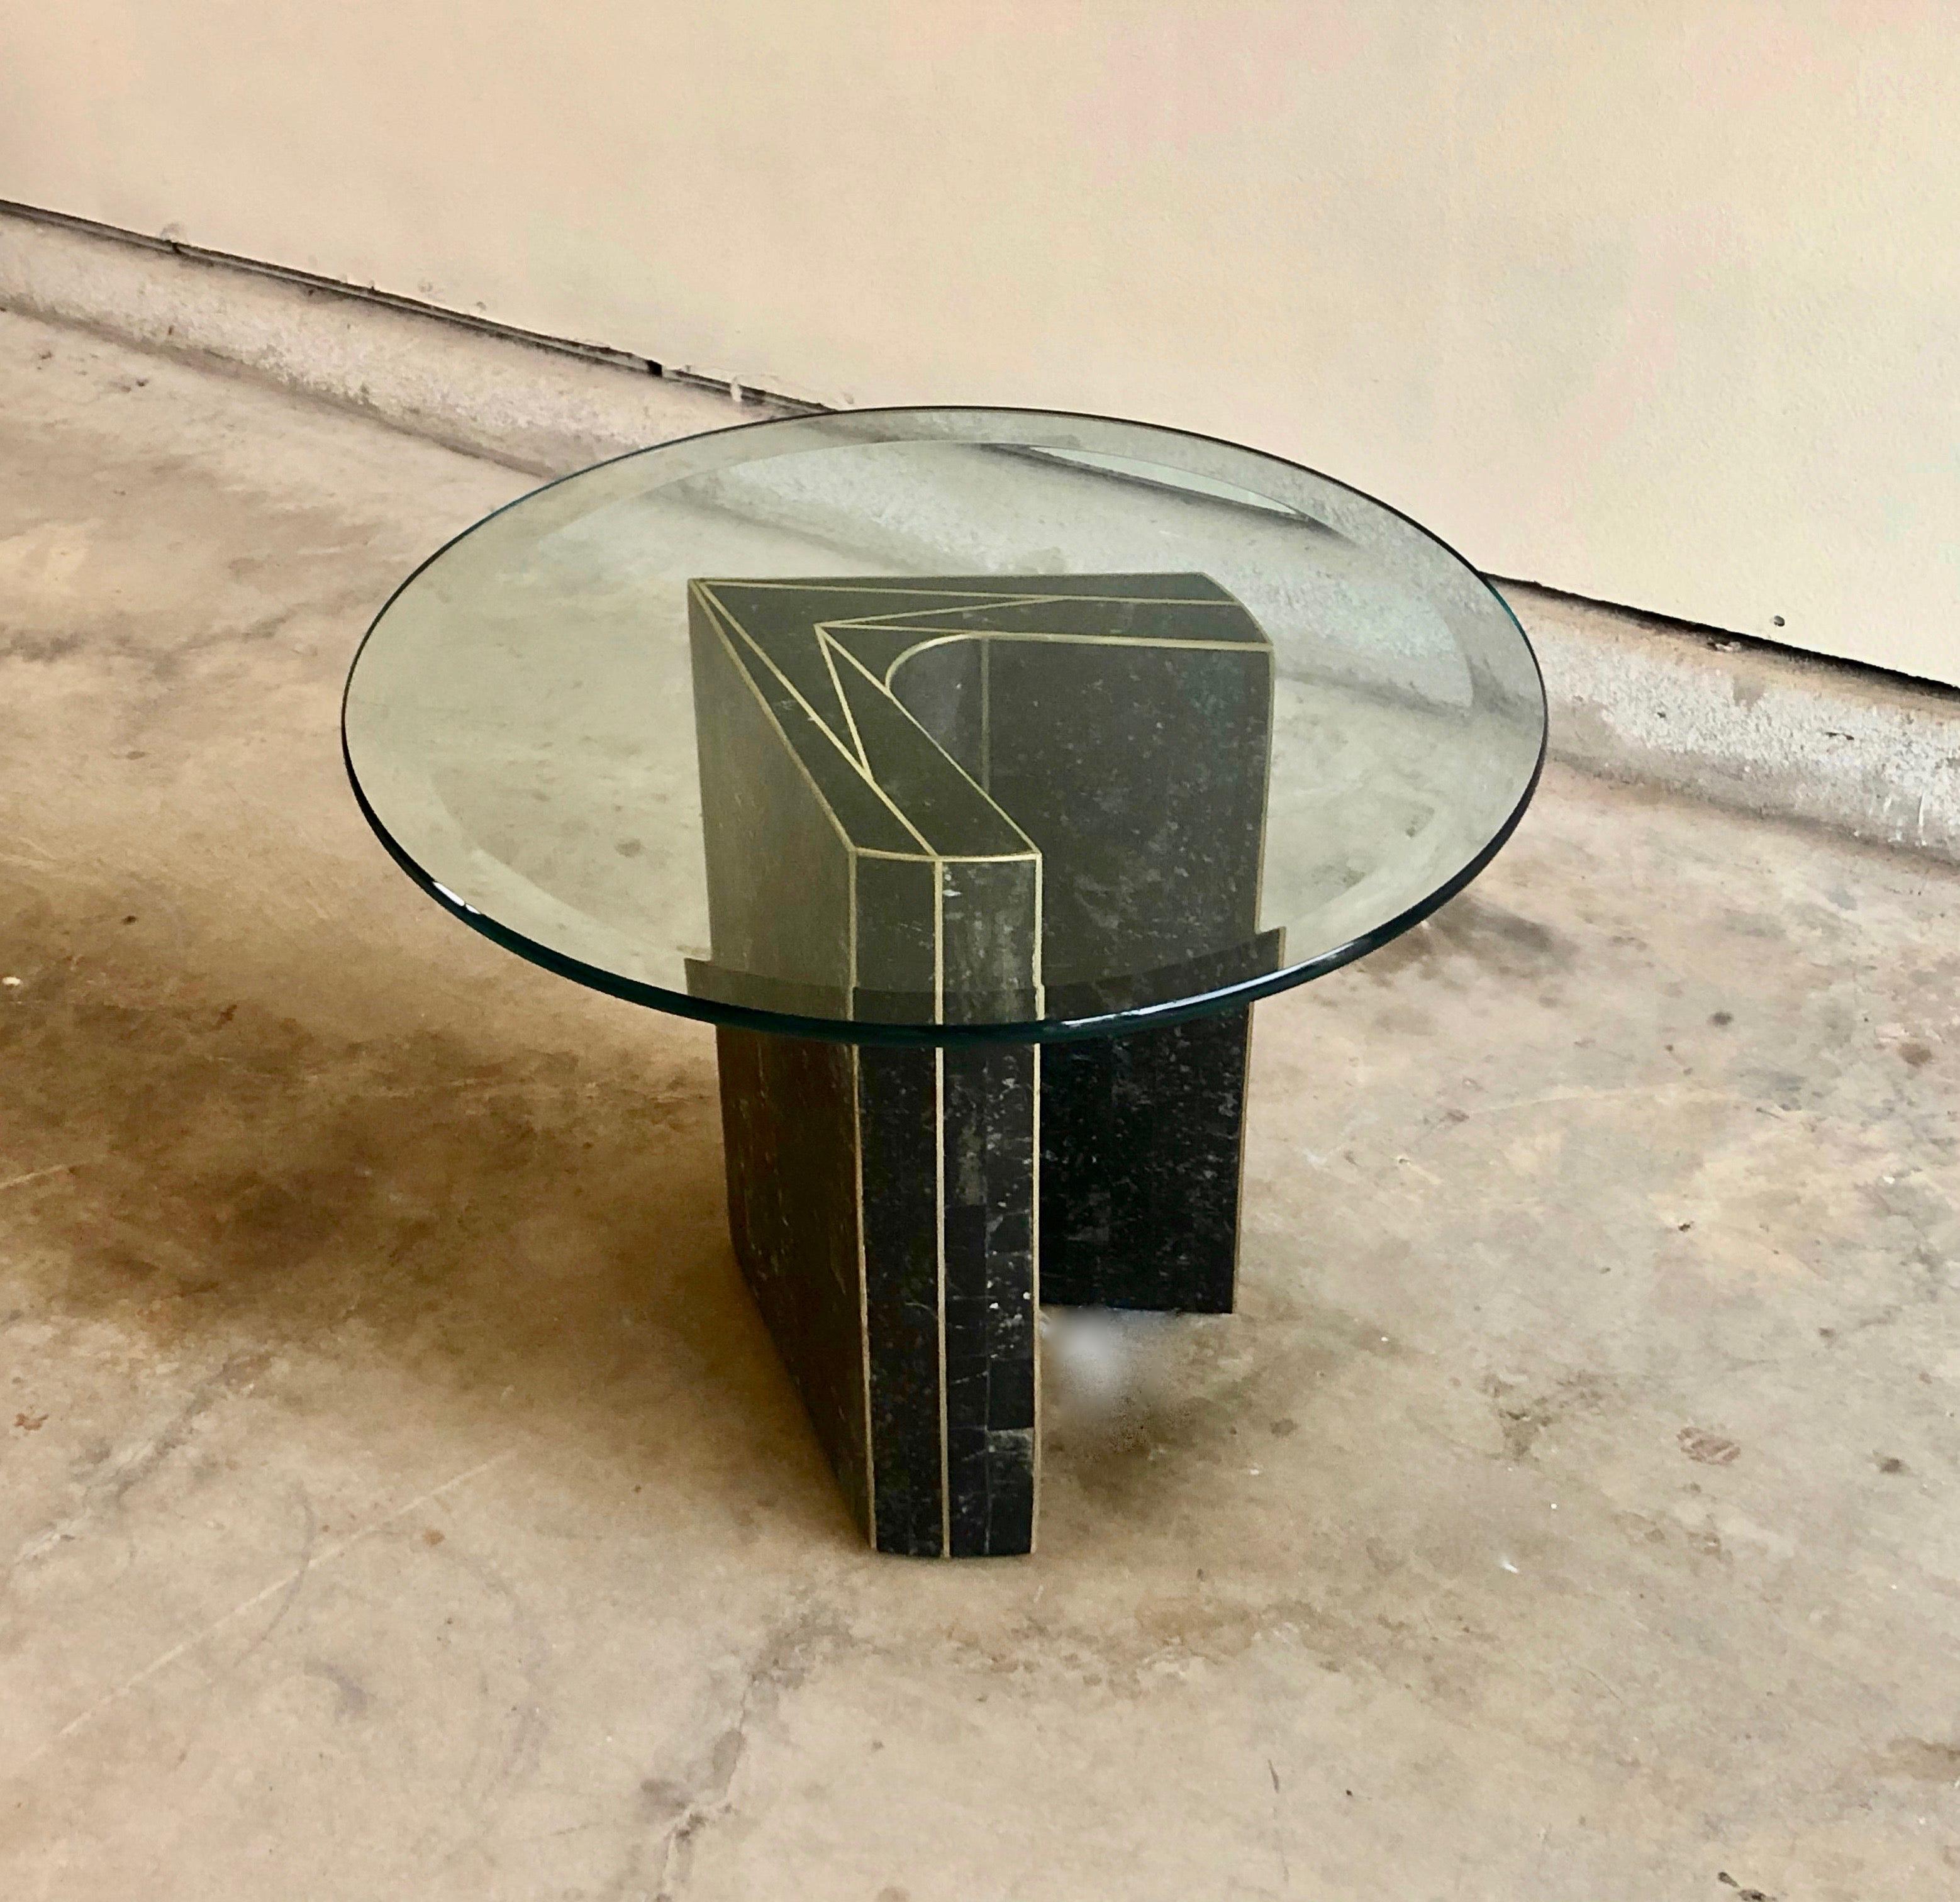 Tessellated schwarz mit Messing trim Stein Beistelltisch im Stil von Maitland Smith Tisch Basis ist 13 x 13.